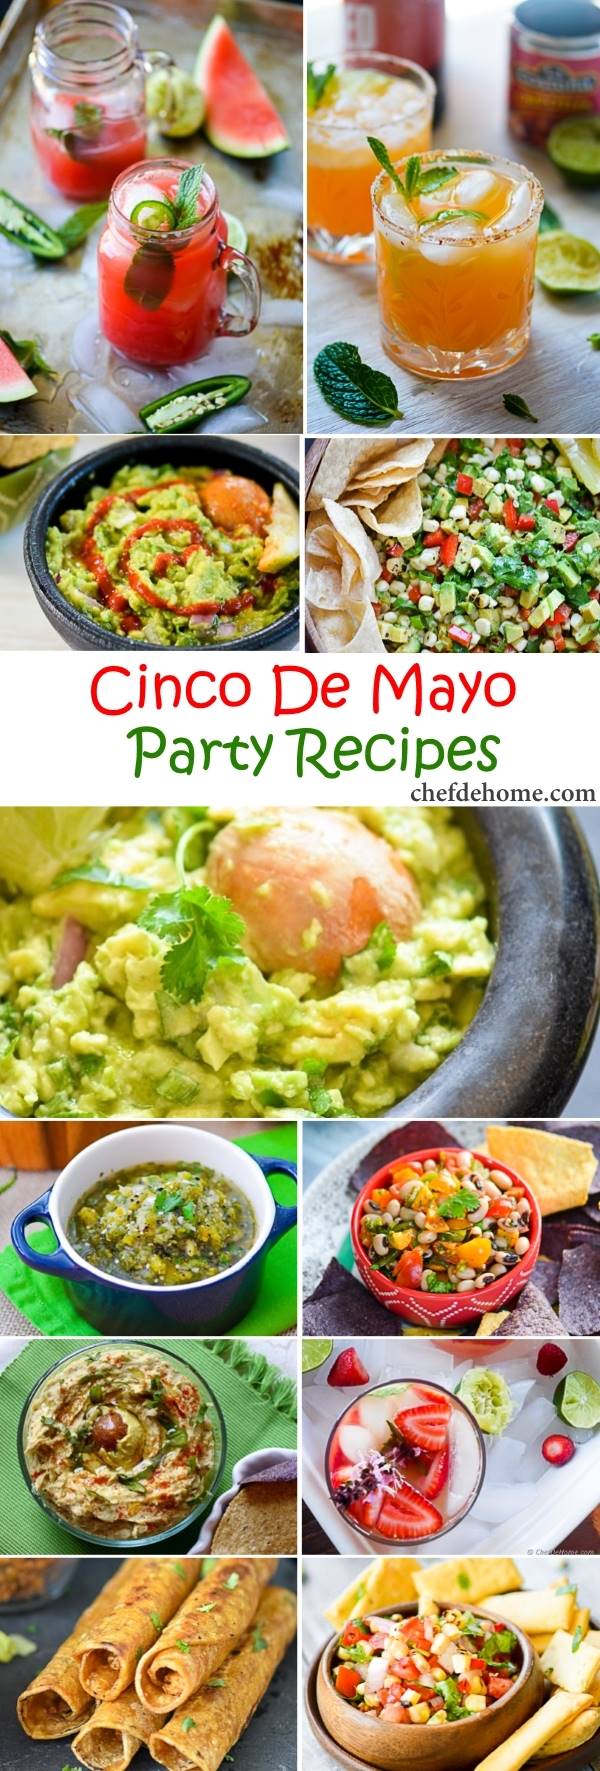 Easy Mexican Fiesta - Cinco De Mayo Party Recipes